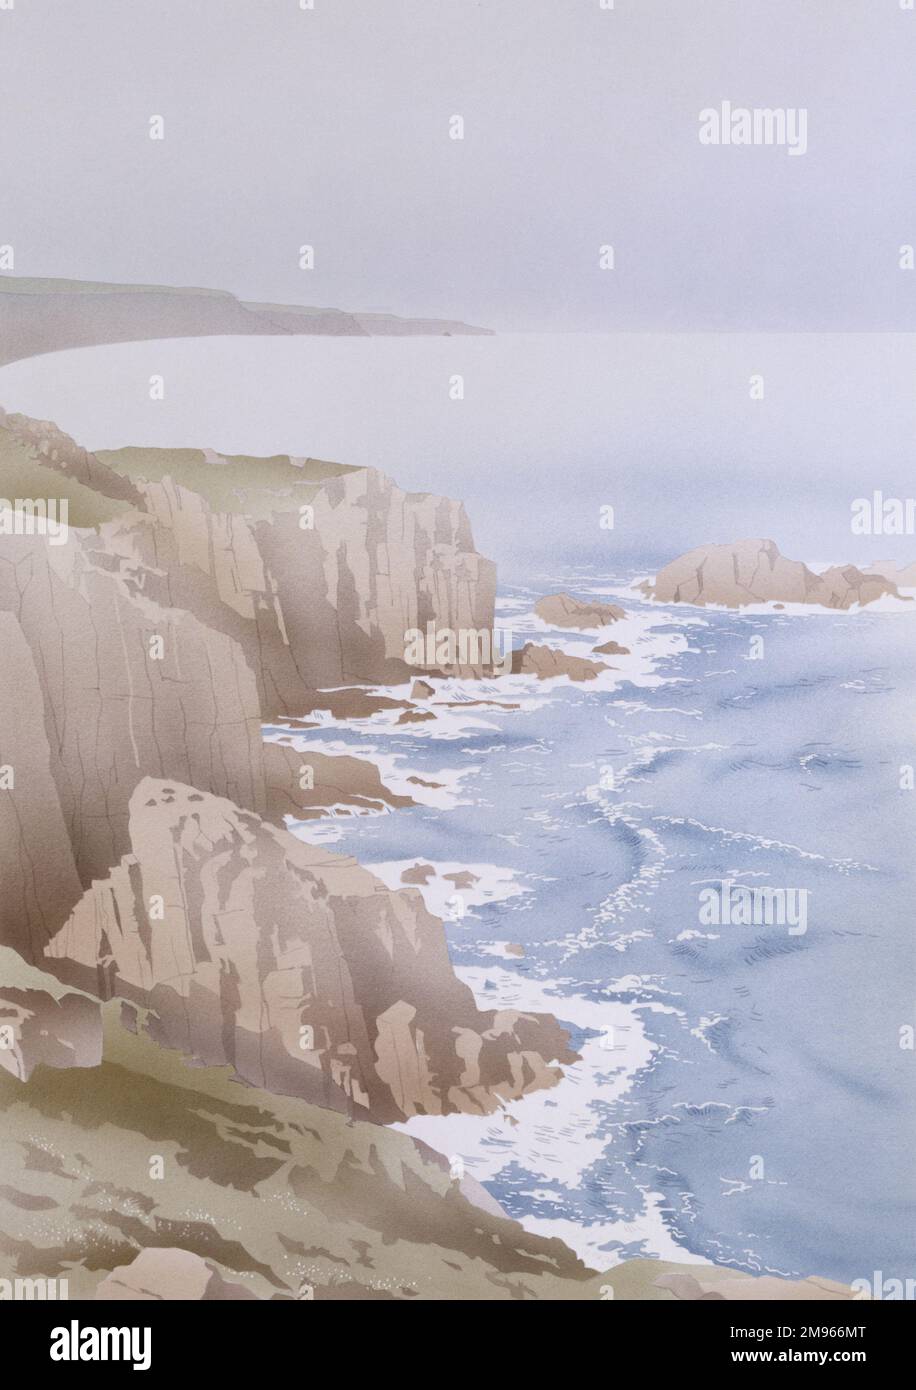 Die Wellen stürzen an einer steilen felsigen Küste mit dunklen hohen Klippen ab. Aquarellmalerei von Malcolm Greensmith. Stockfoto